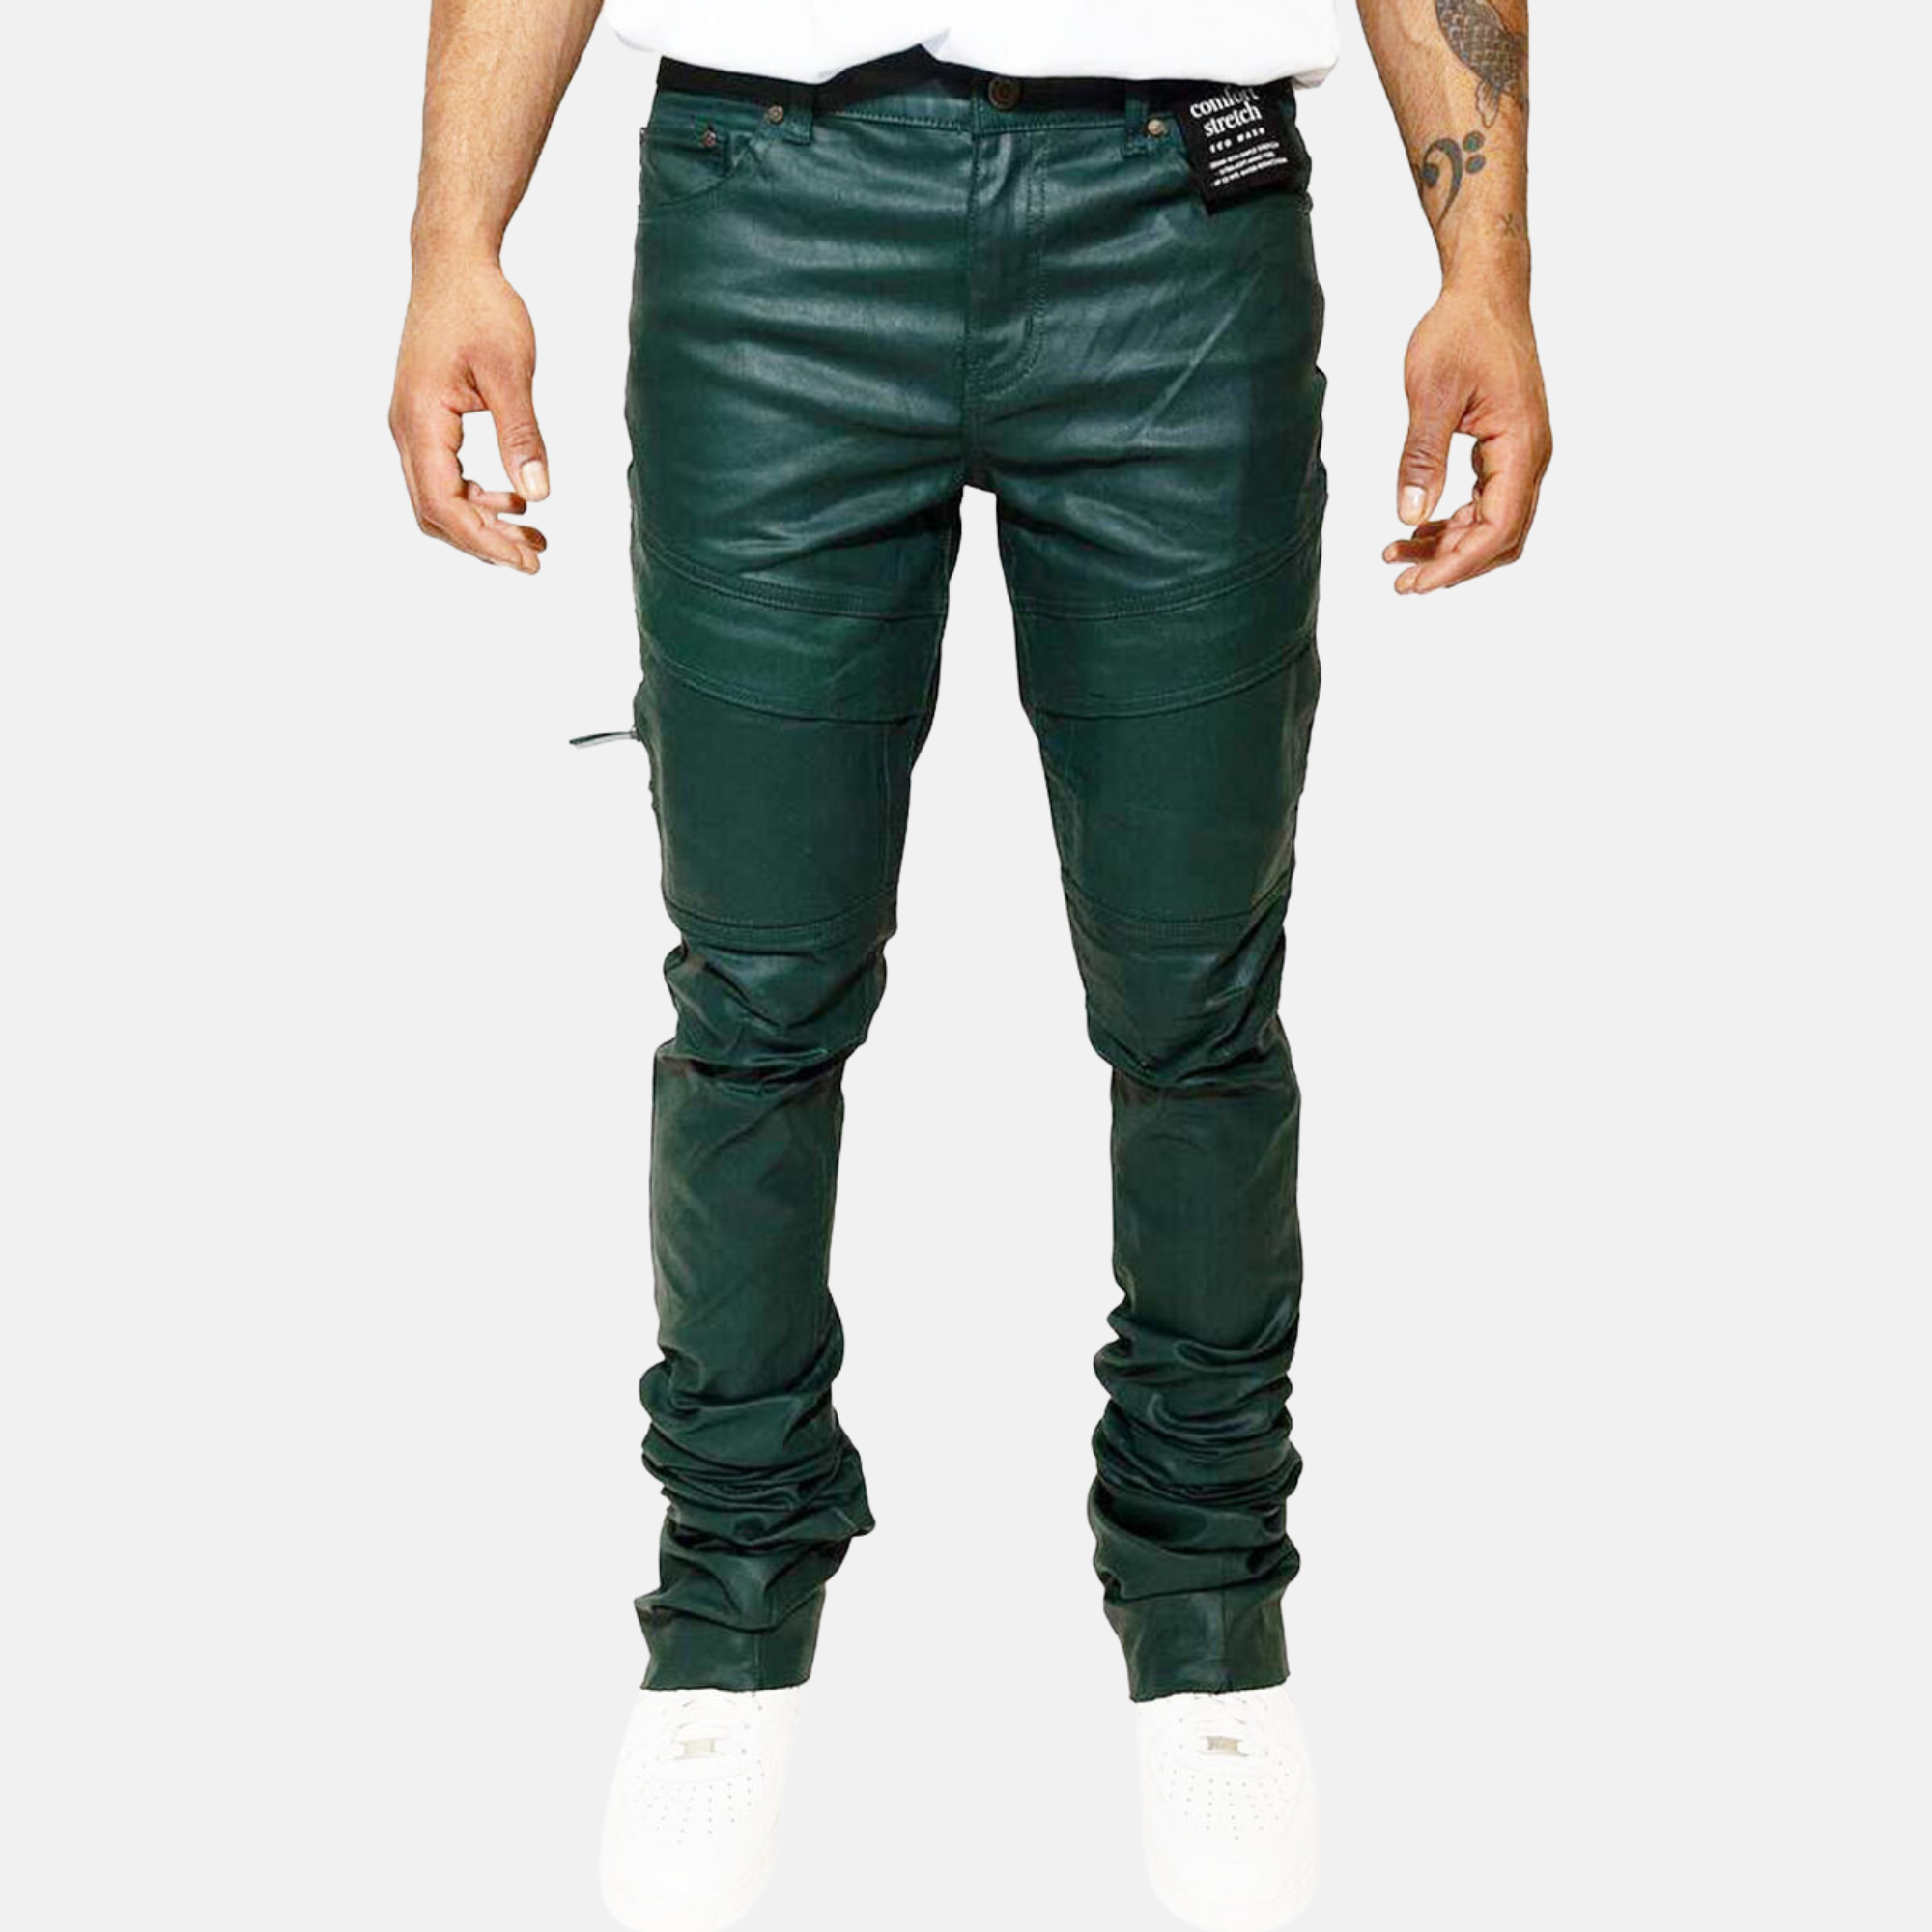 Dark Green Jeans